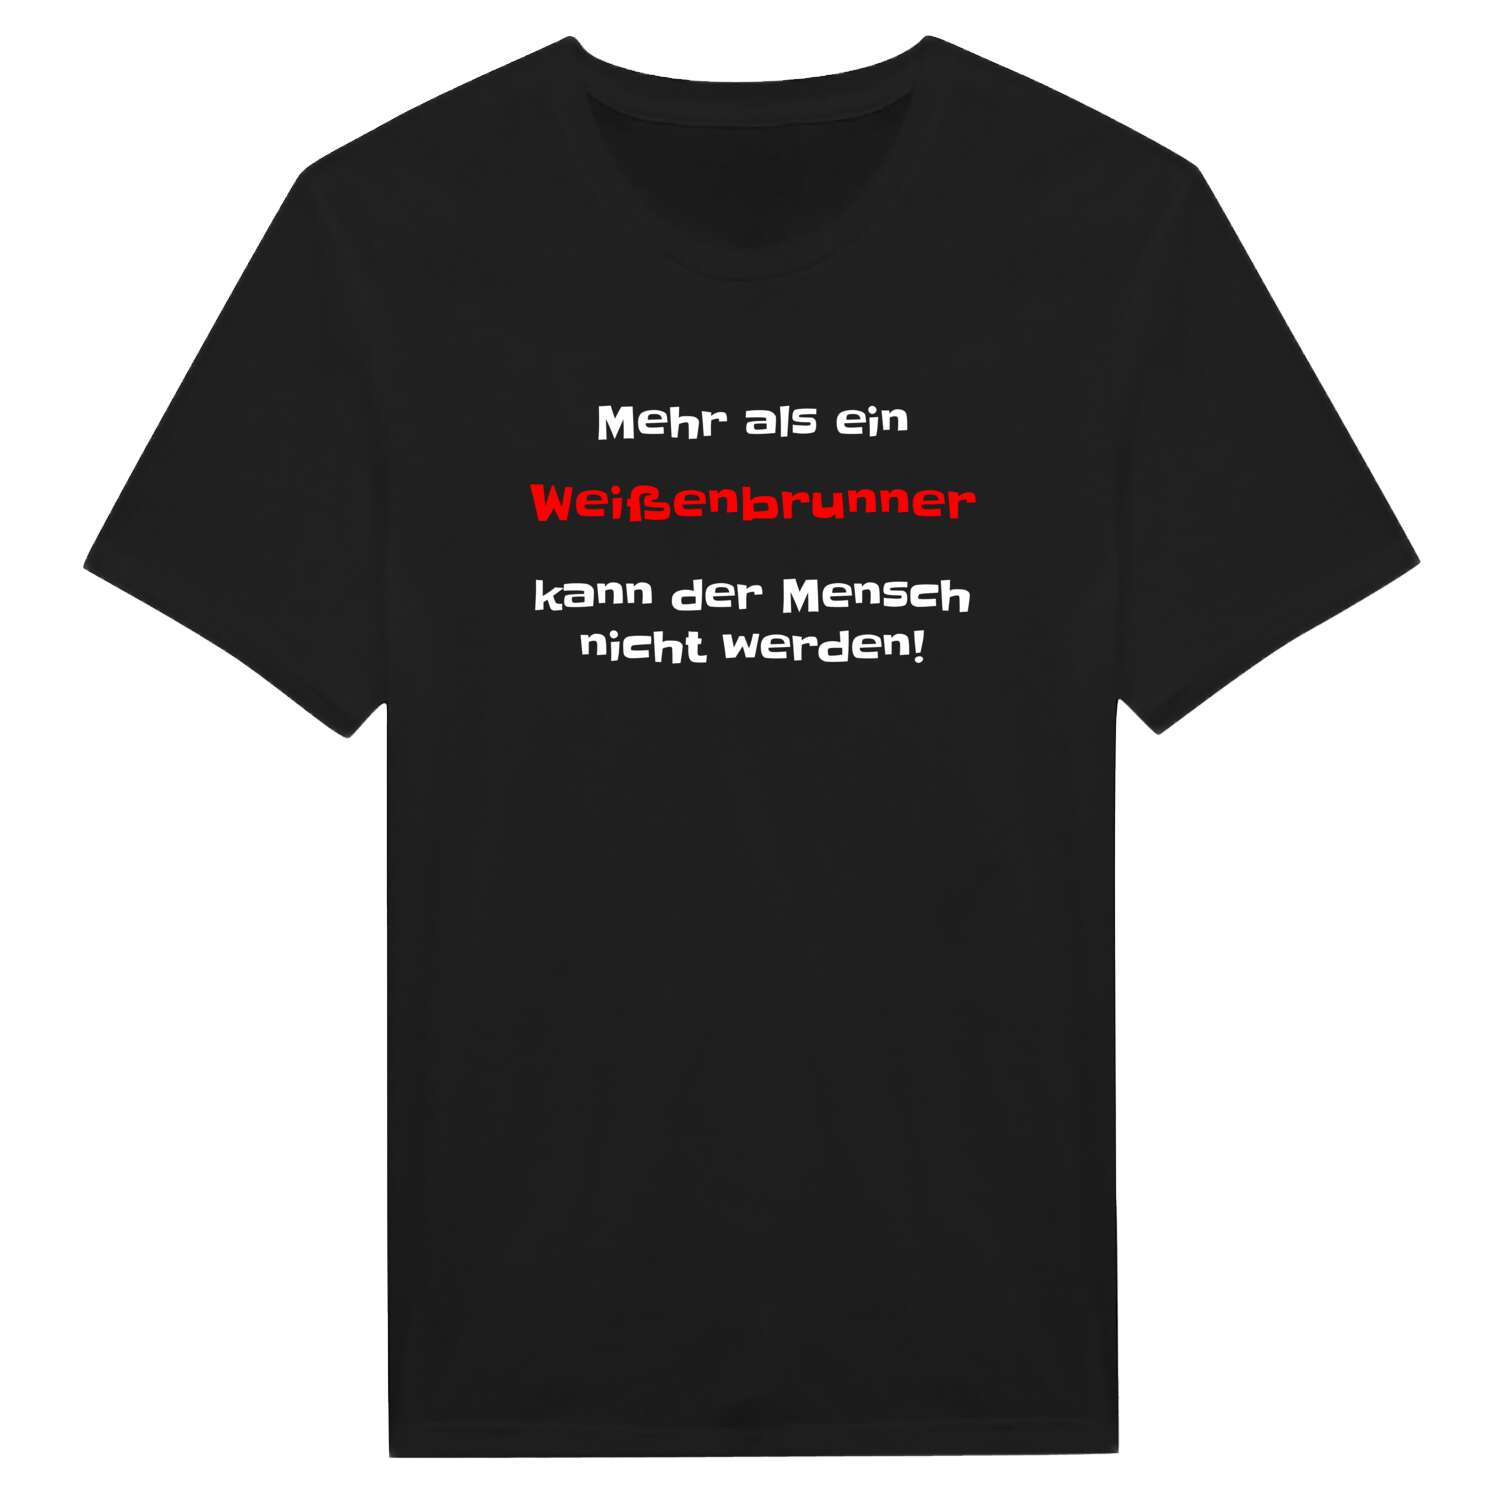 Weißenbrunn T-Shirt »Mehr als ein«